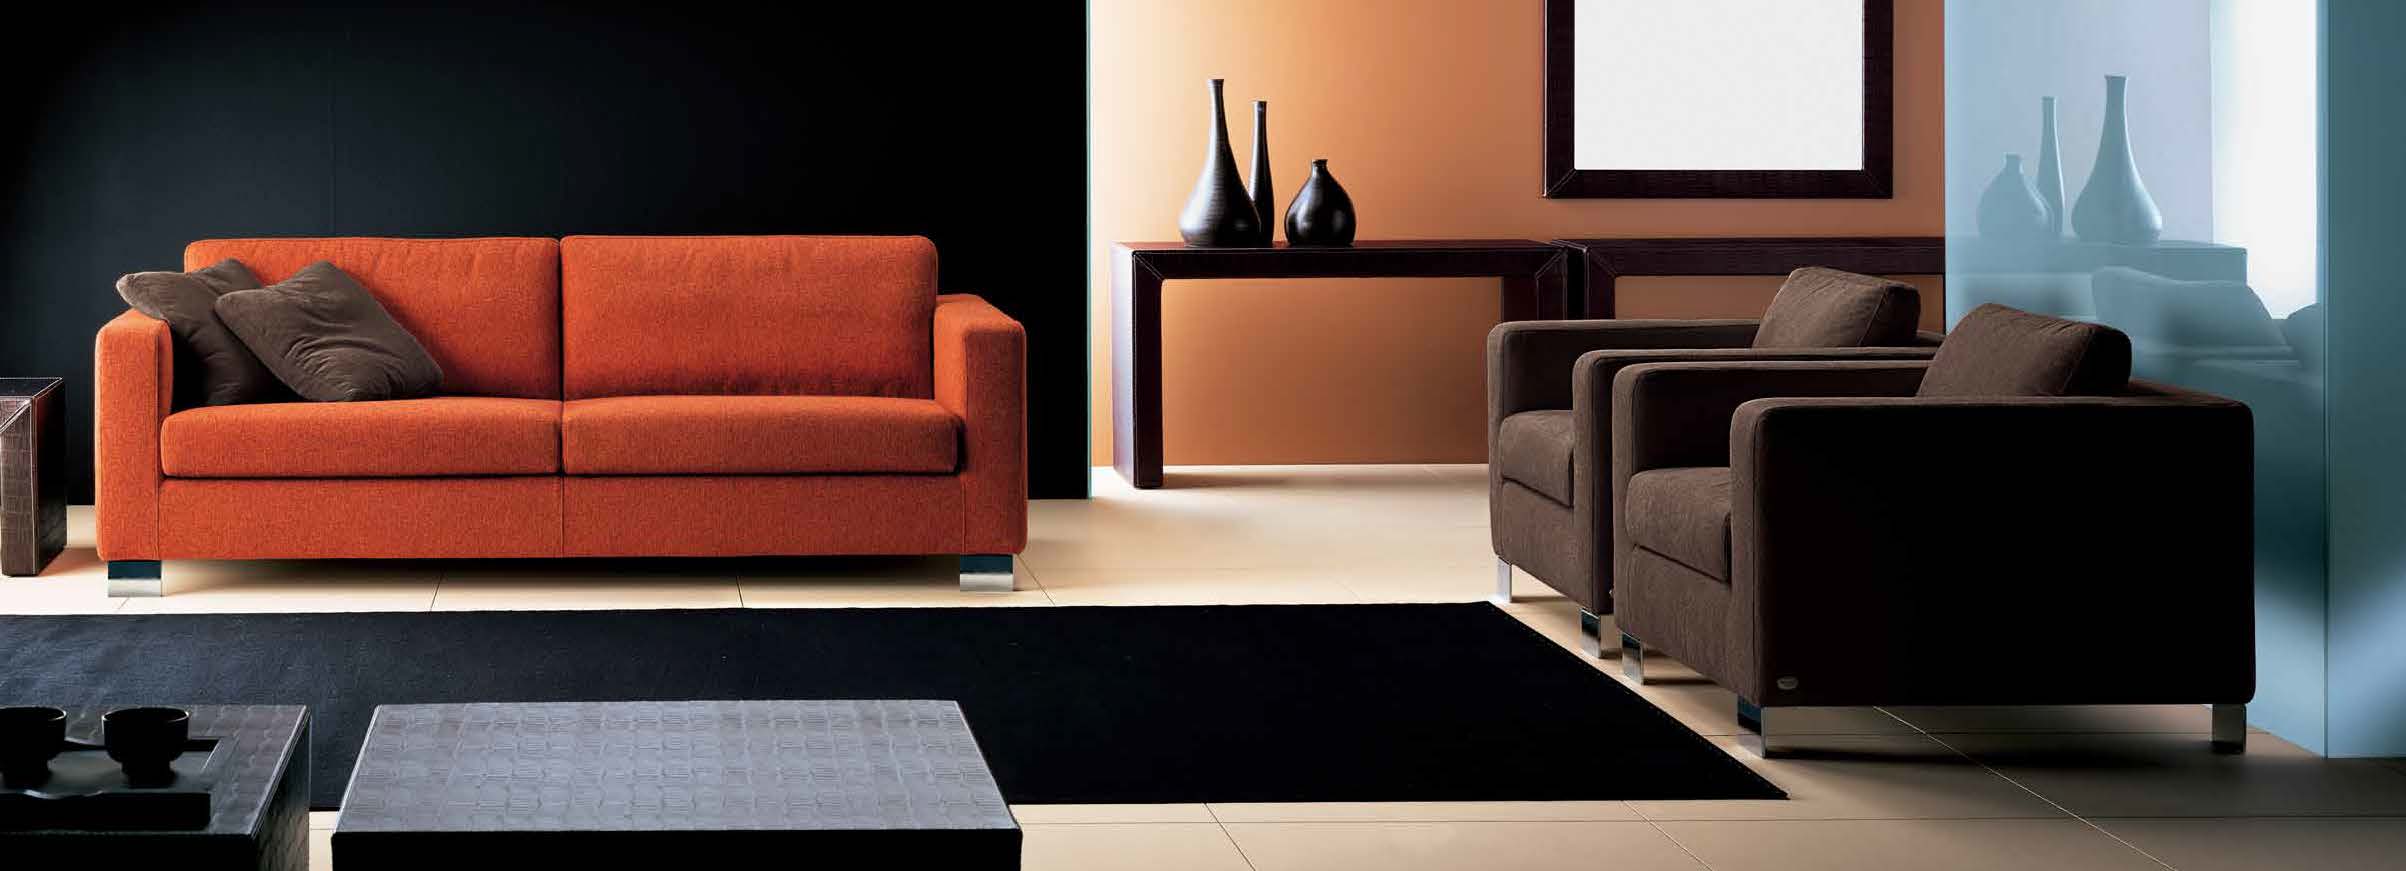 Living Room Furniture Rugs Bogart